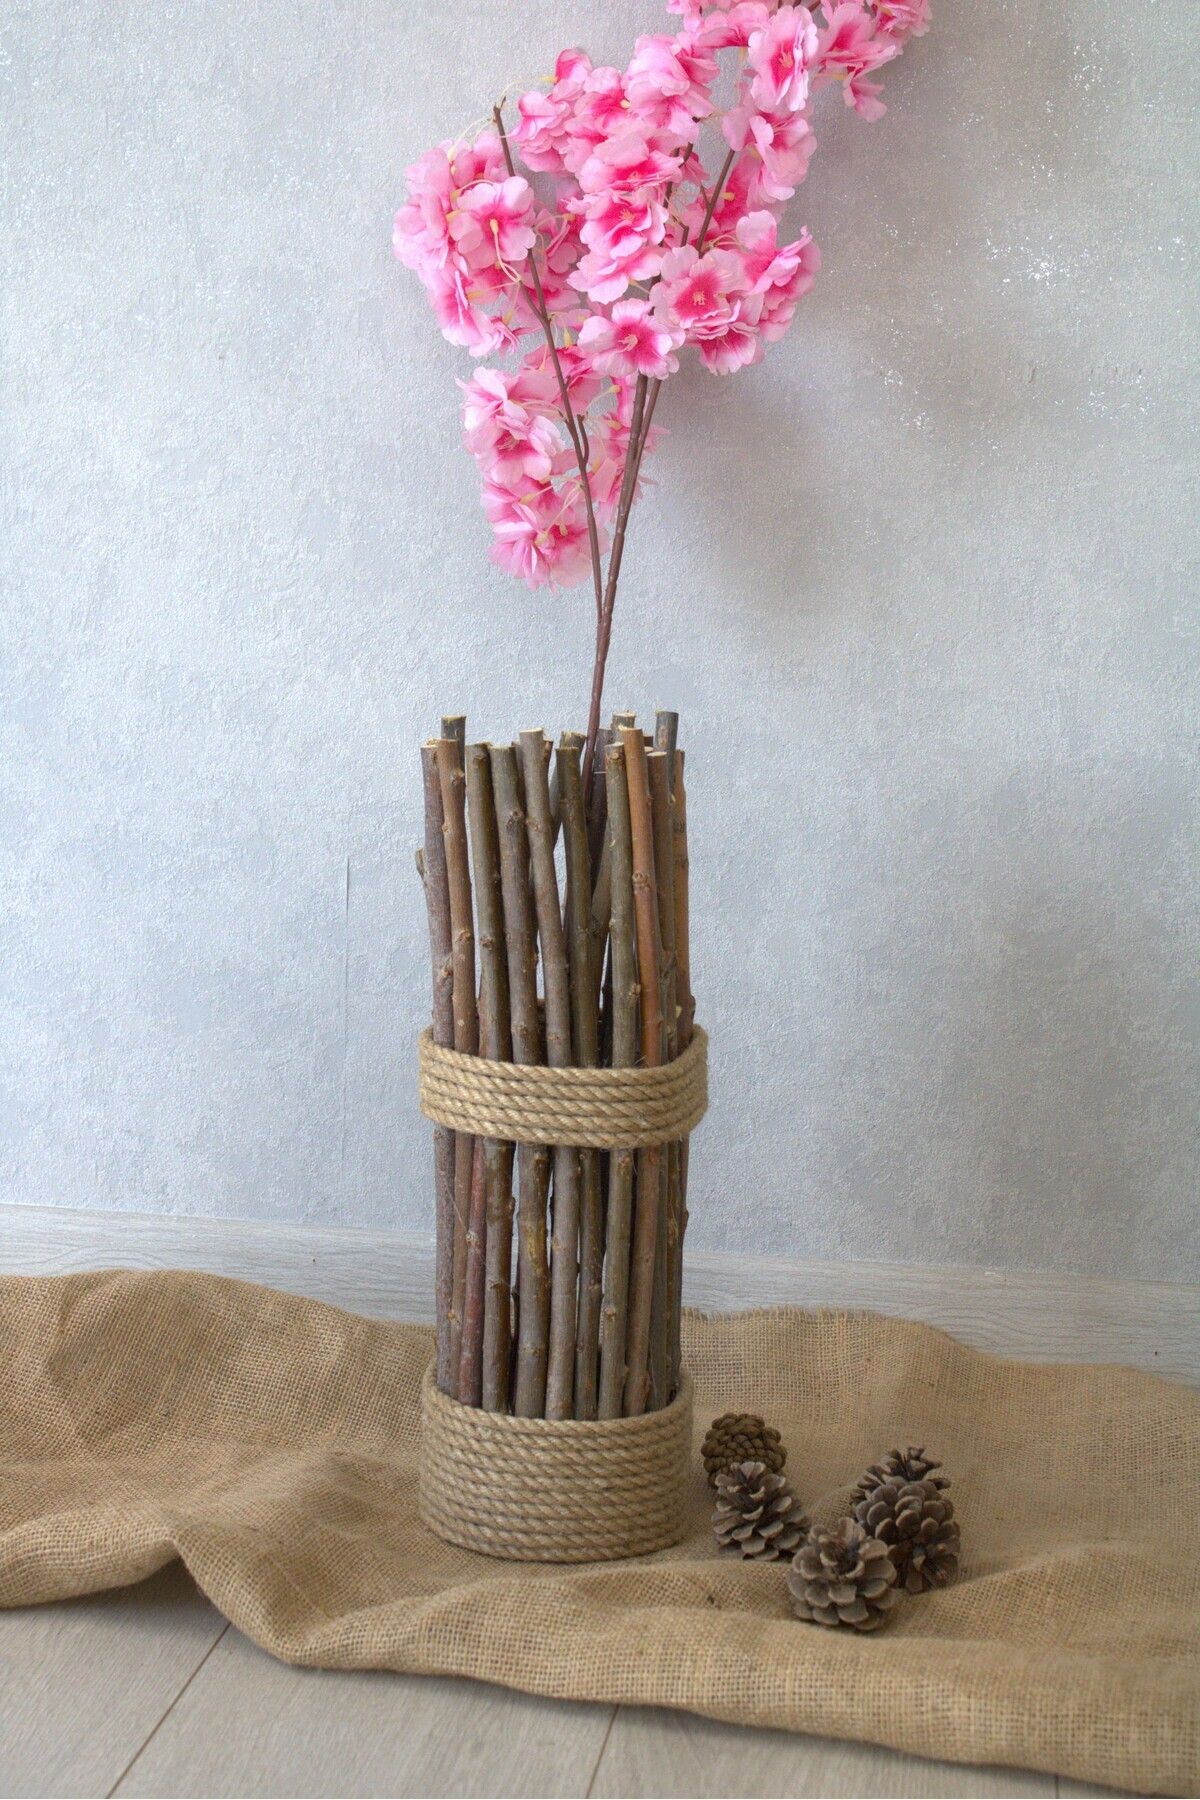 Asenya Hasır Örgü Vazo 40 Cm Doğal Söğüt Dalı Çiçeklik Yapay Çiçek Vazosu Kuru Dal Vazosu Dekoratif Saksı